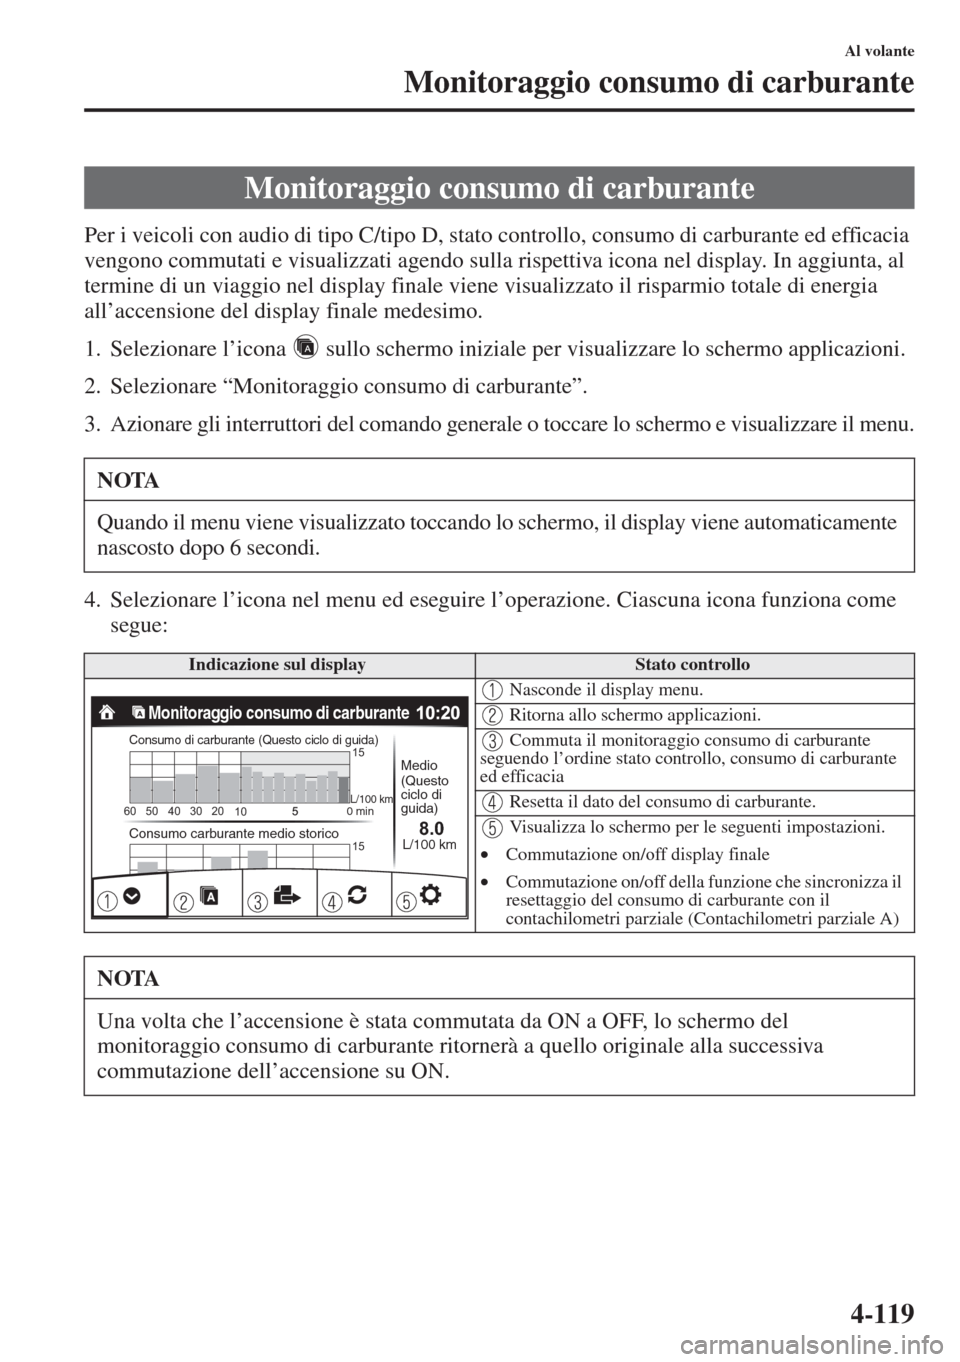 MAZDA MODEL 6 2015  Manuale del proprietario (in Italian)  4-119
Al volante
Monitoraggio consumo di carburante
Per i veicoli con audio di tipo C/tipo D, stato controllo, consumo di carburante ed efficacia 
vengono commutati e visualizzati agendo sulla rispett